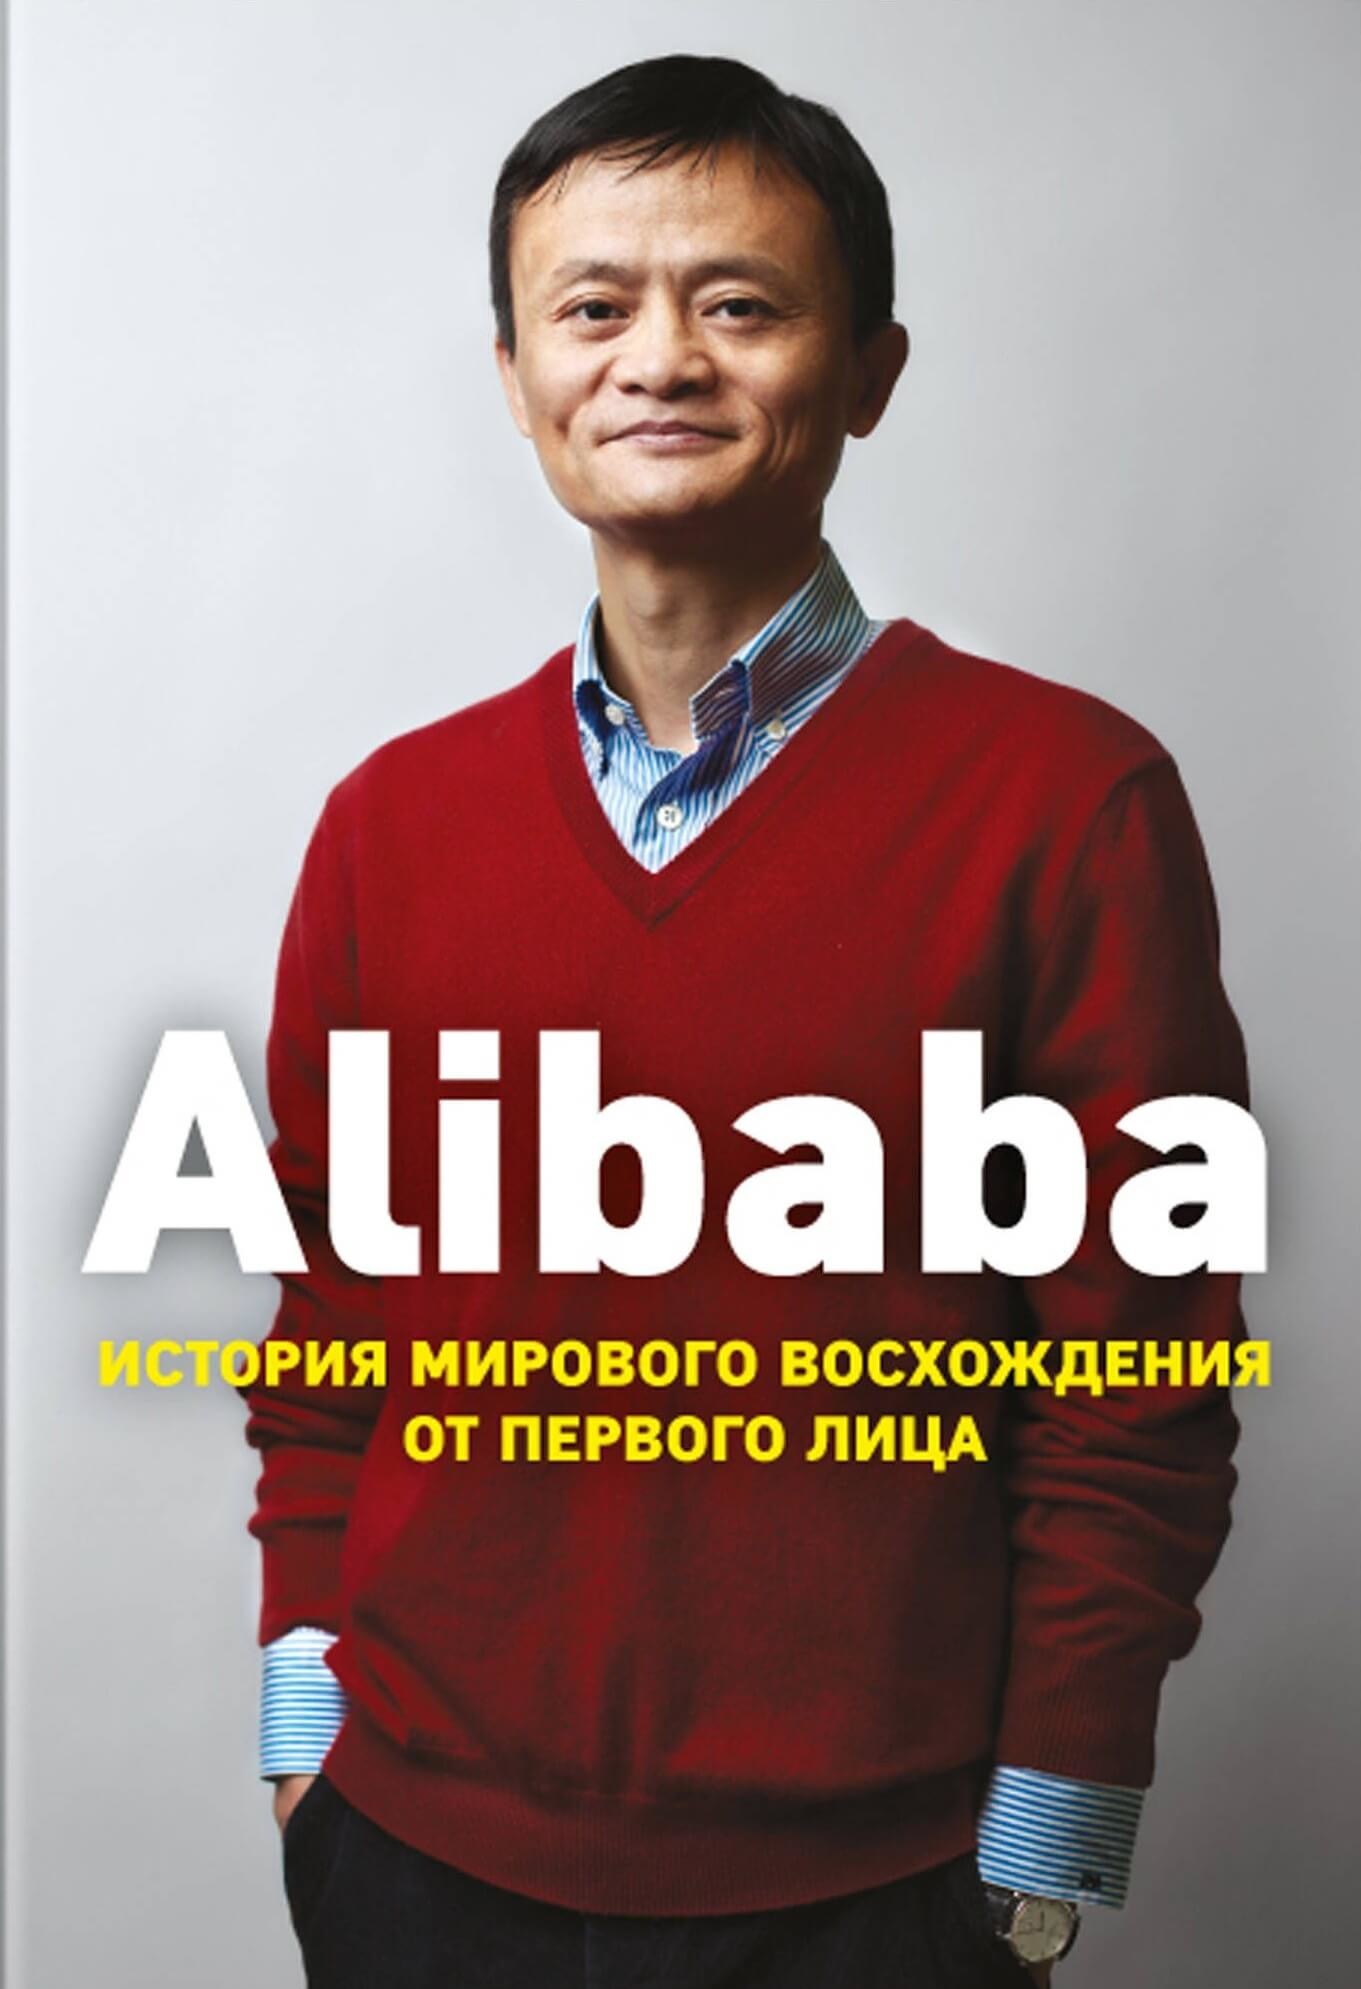 Alibaba. История мирового восхождения. Автор — Дункан Кларк. 